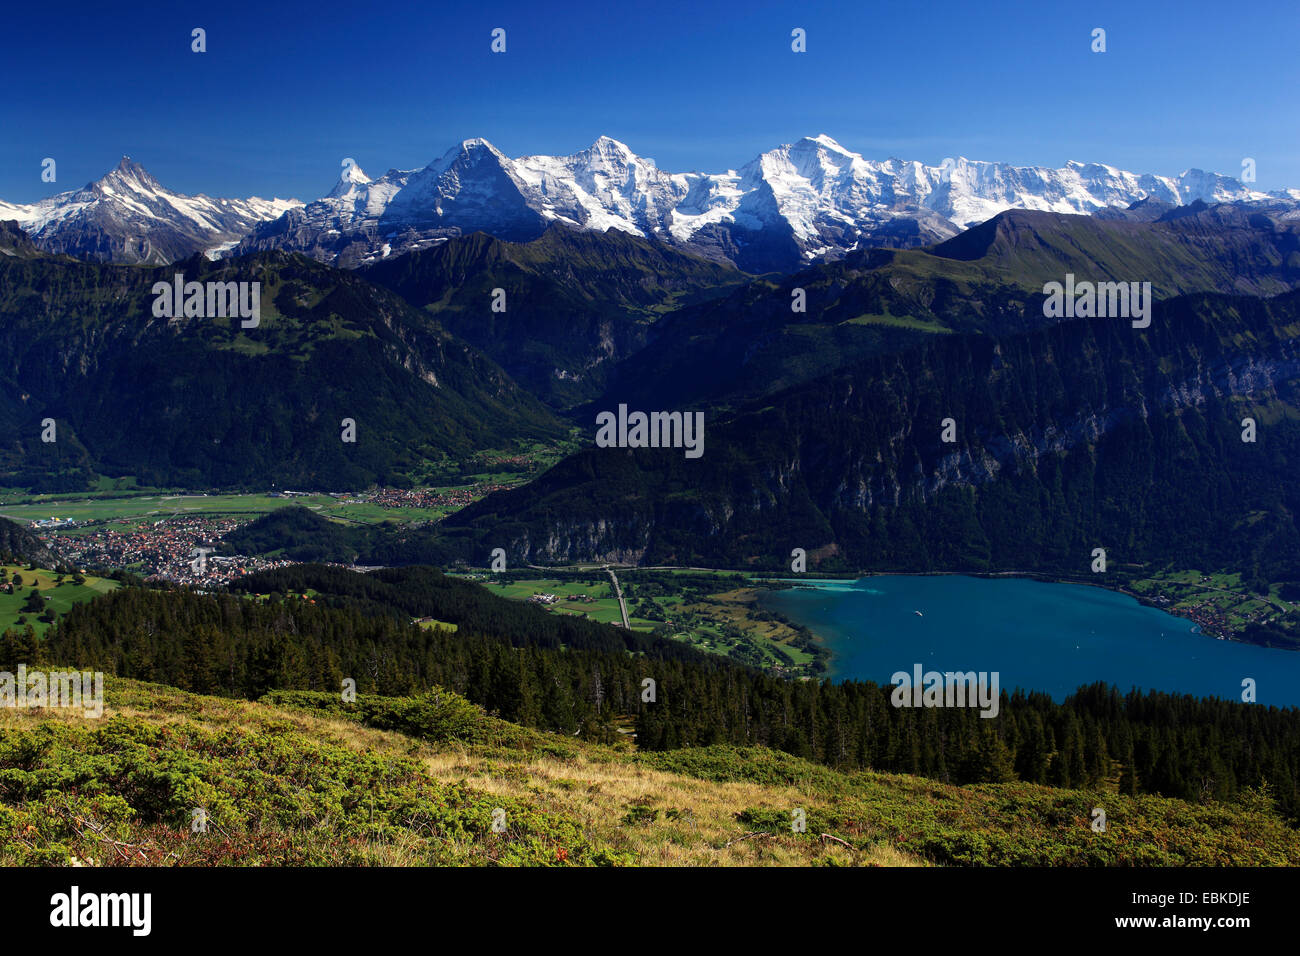 Swiss Alp, vue de Wang à Lauterbrunnen et le lac de Thoune, l'Eiger, 3974 m, Moench, 4099 m, Jungfrau, 4158m, Suisse, Oberland Bernois, Lauterbrunnen Banque D'Images